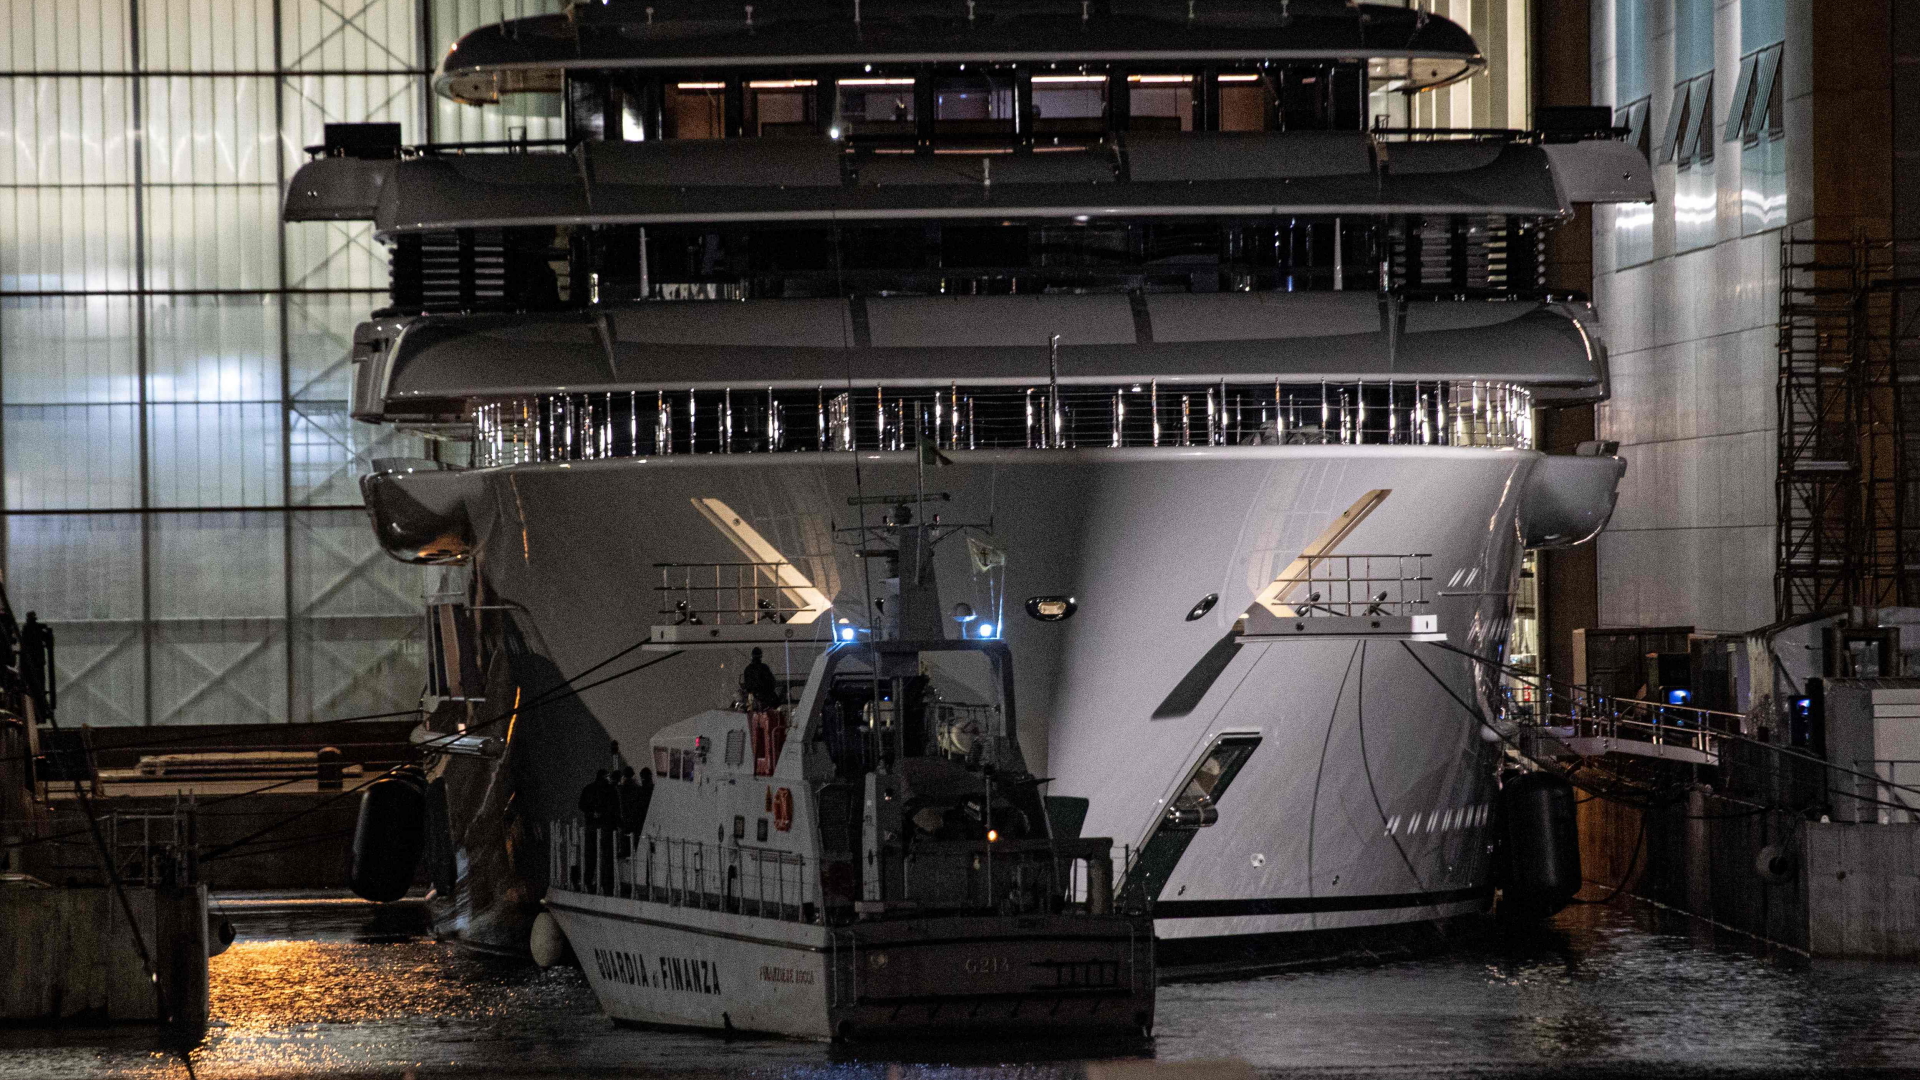 Prima della partenza: l’Italia sequestra la barca presumibilmente di proprietà della mega barca di Putin